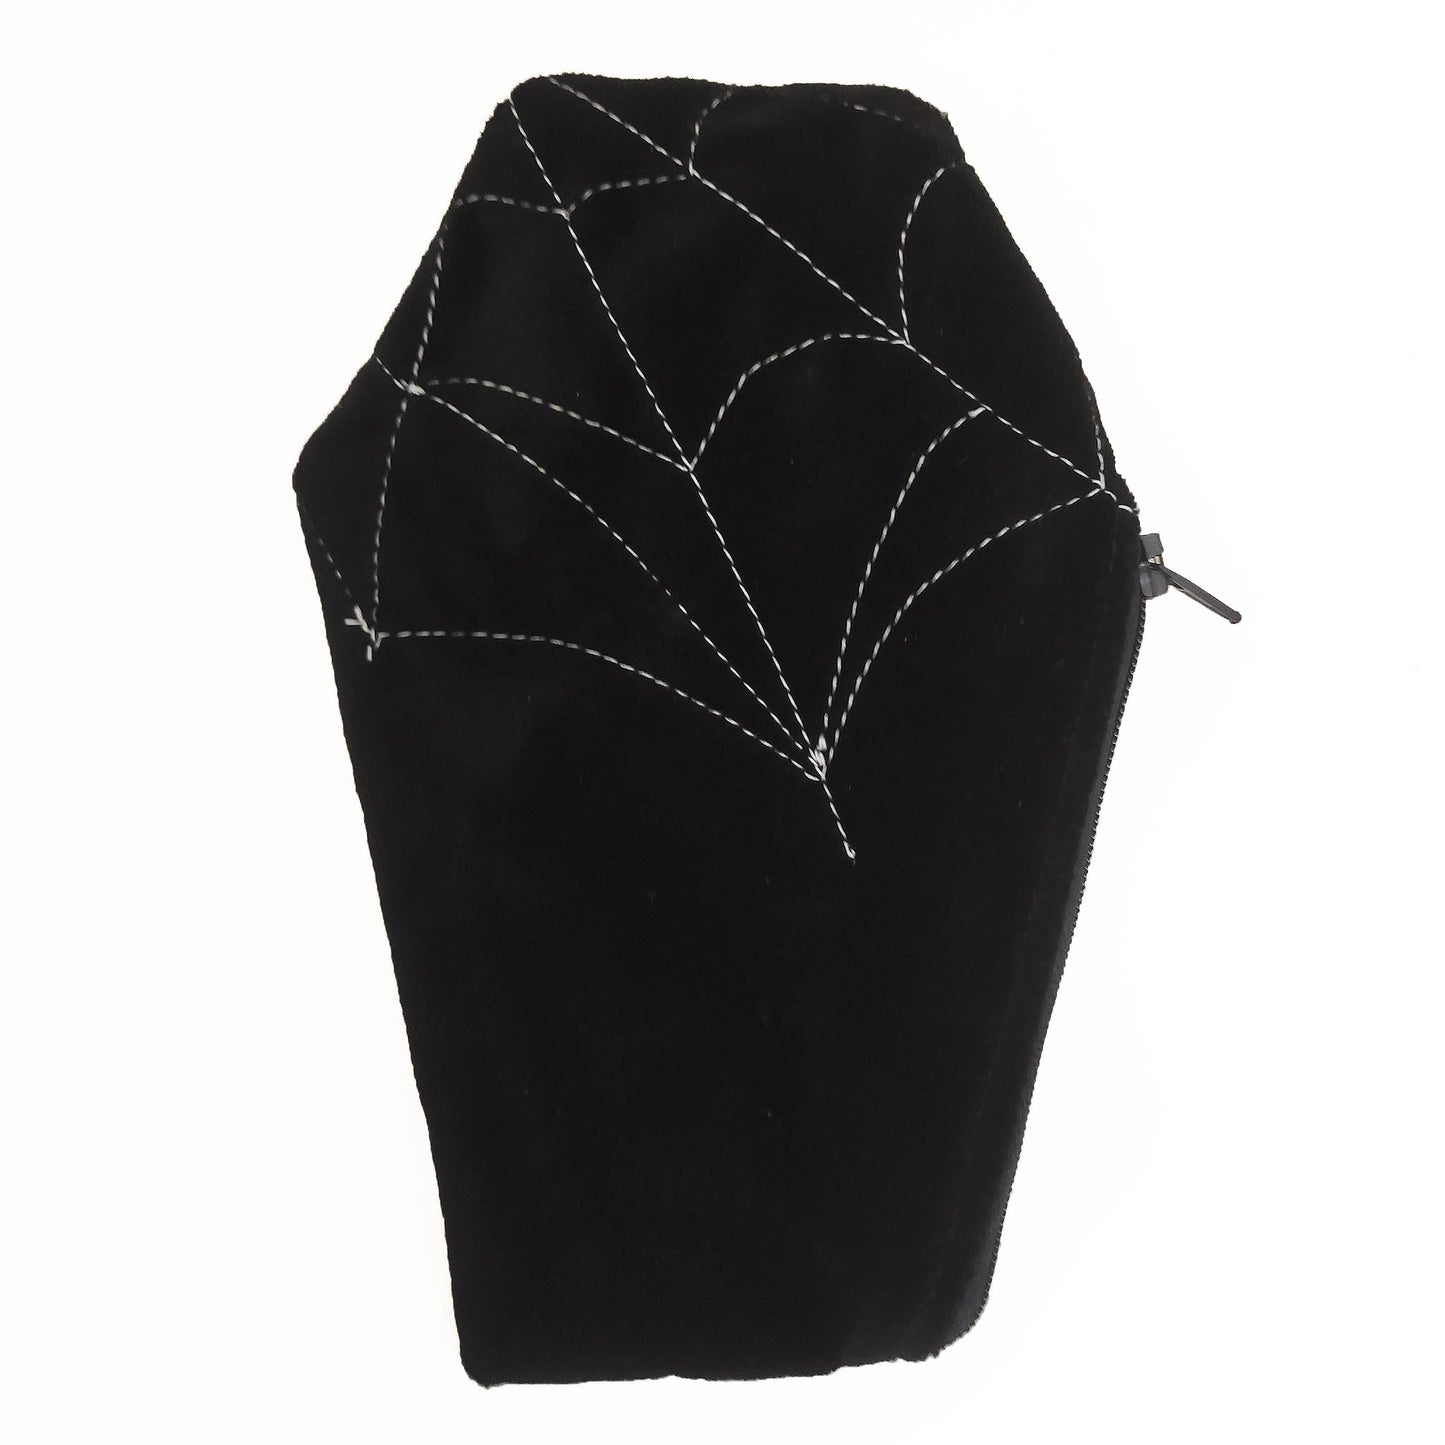 Sargförmiges Täschchen aus schwarzem Samtstoff mit darauf genähtem Spinnennetz. Dieses ist bei jedem Teil anders und somit einzigartig. Es hat einen tollen Futterstoff mit bedruckten Skeletten und schließt mit einem Reißverschluss.